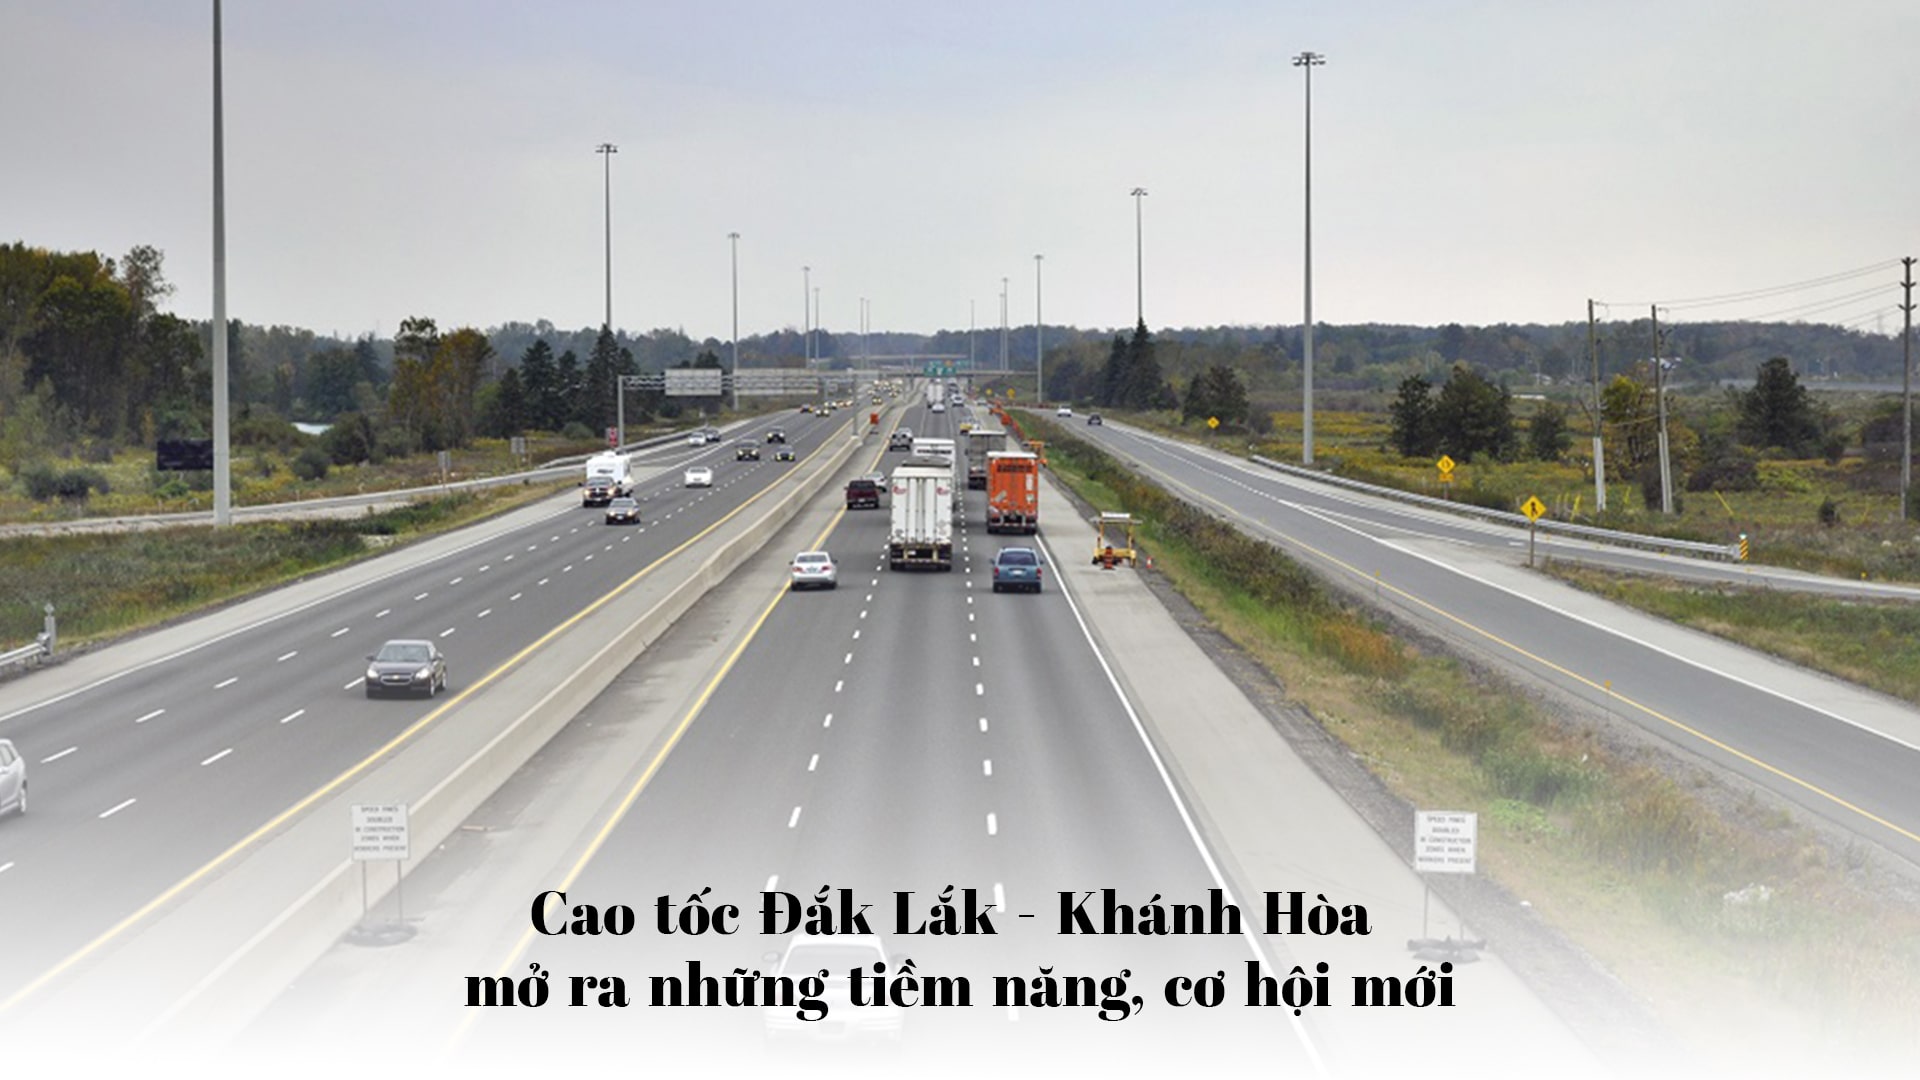 Cao tốc Khánh Hoà Daklak 